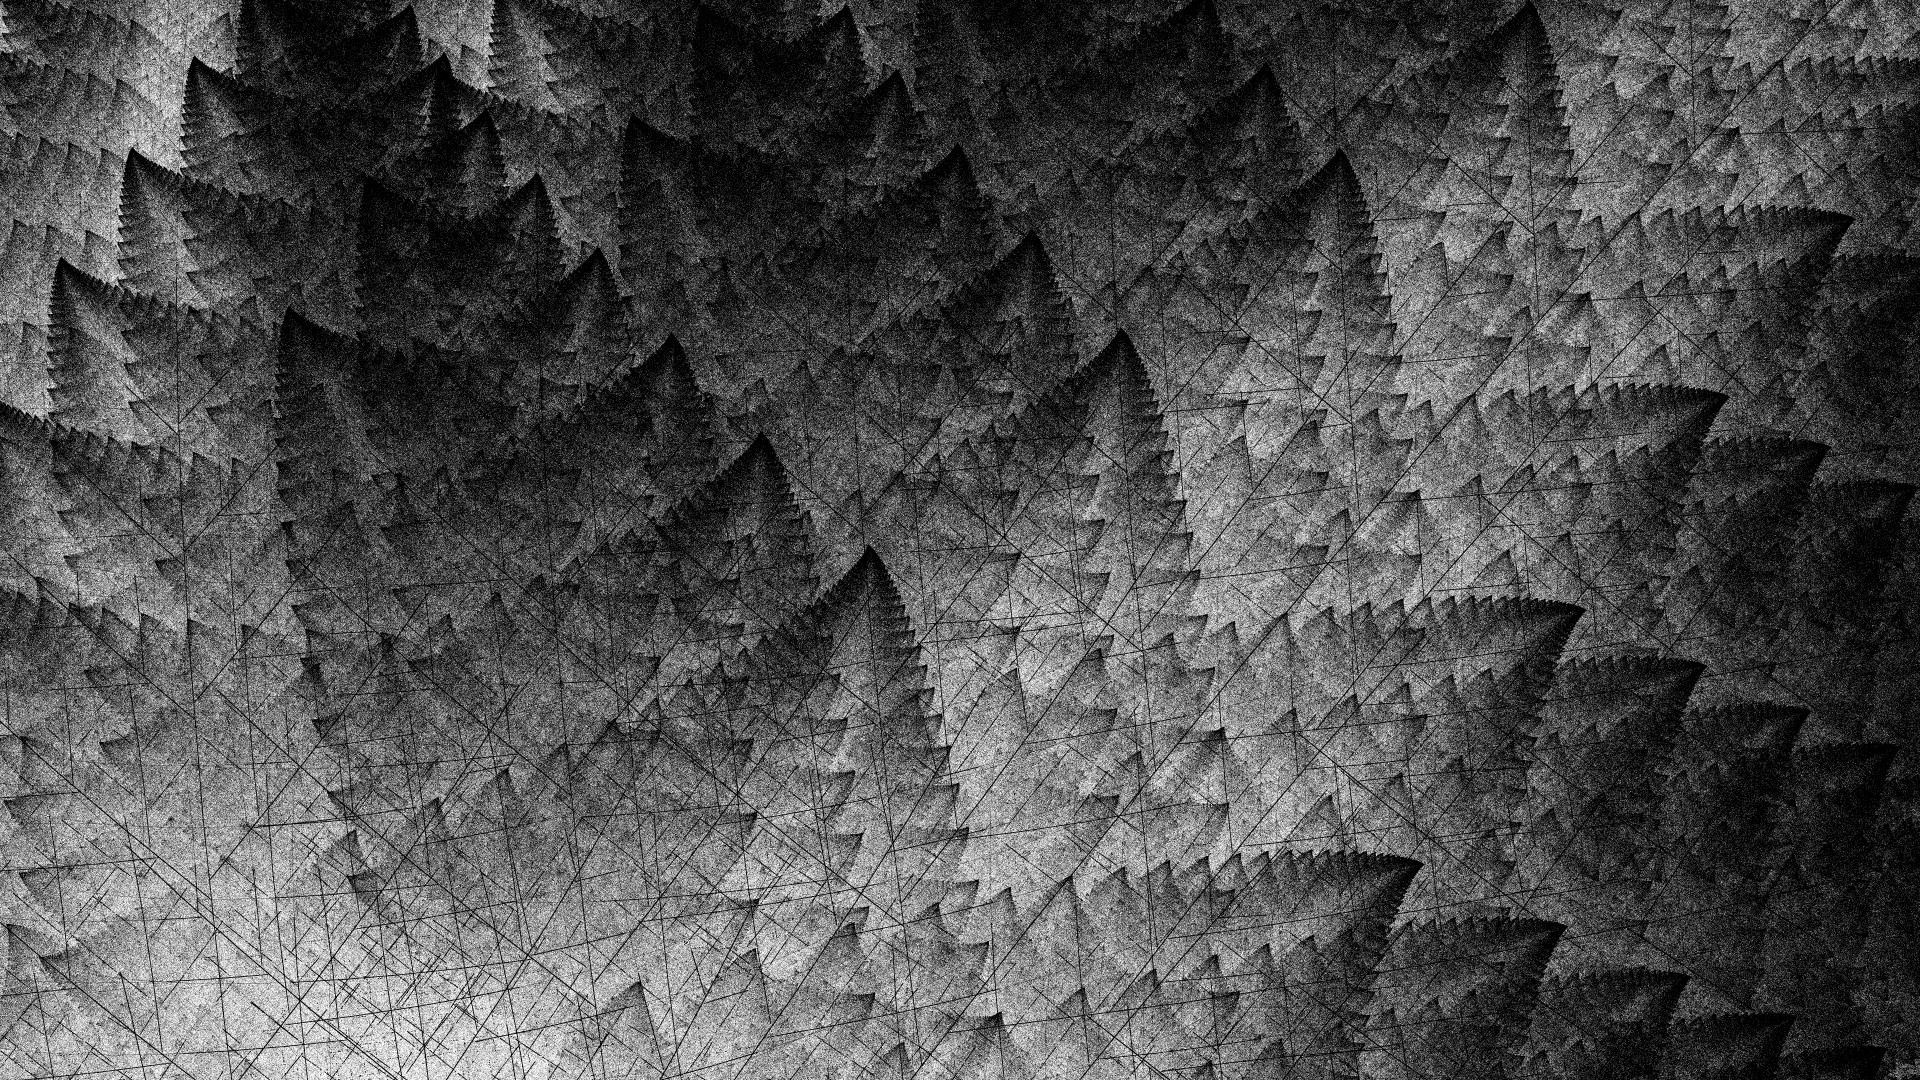 Detail from leaf fractal based on Barnsley Fern